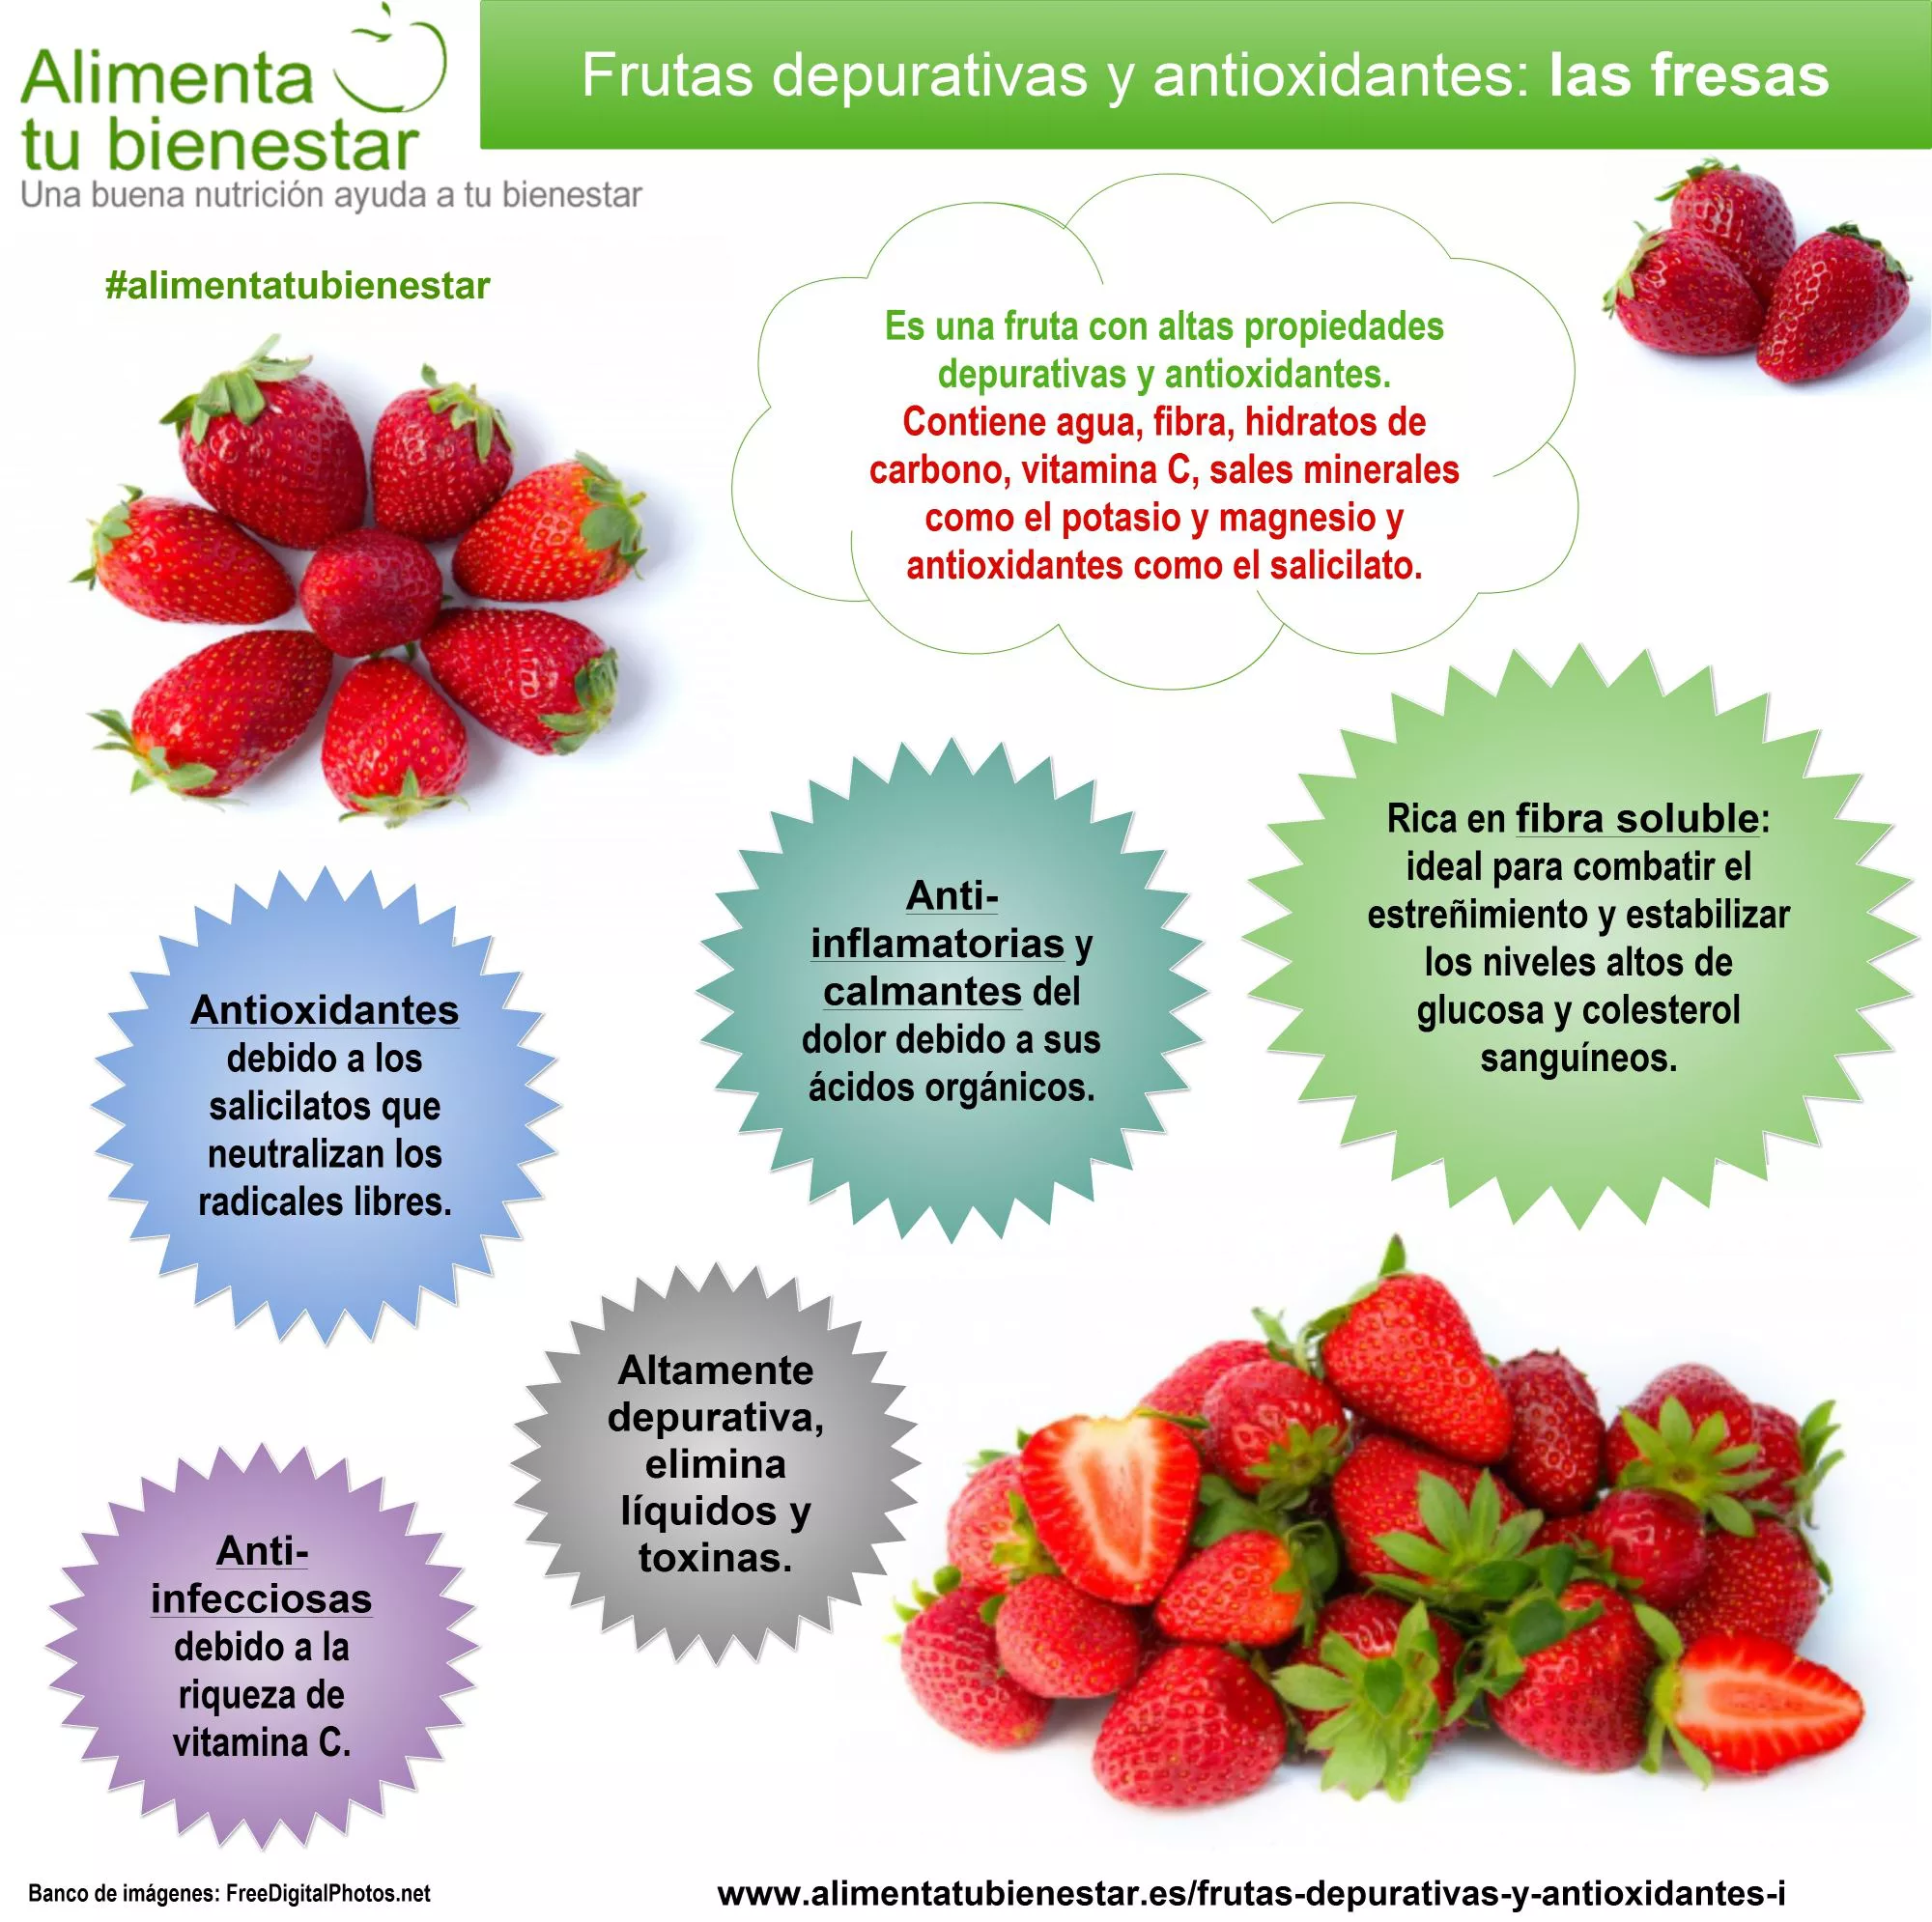 Infografía Frutas depurativas y antioxidantes Las Fresas